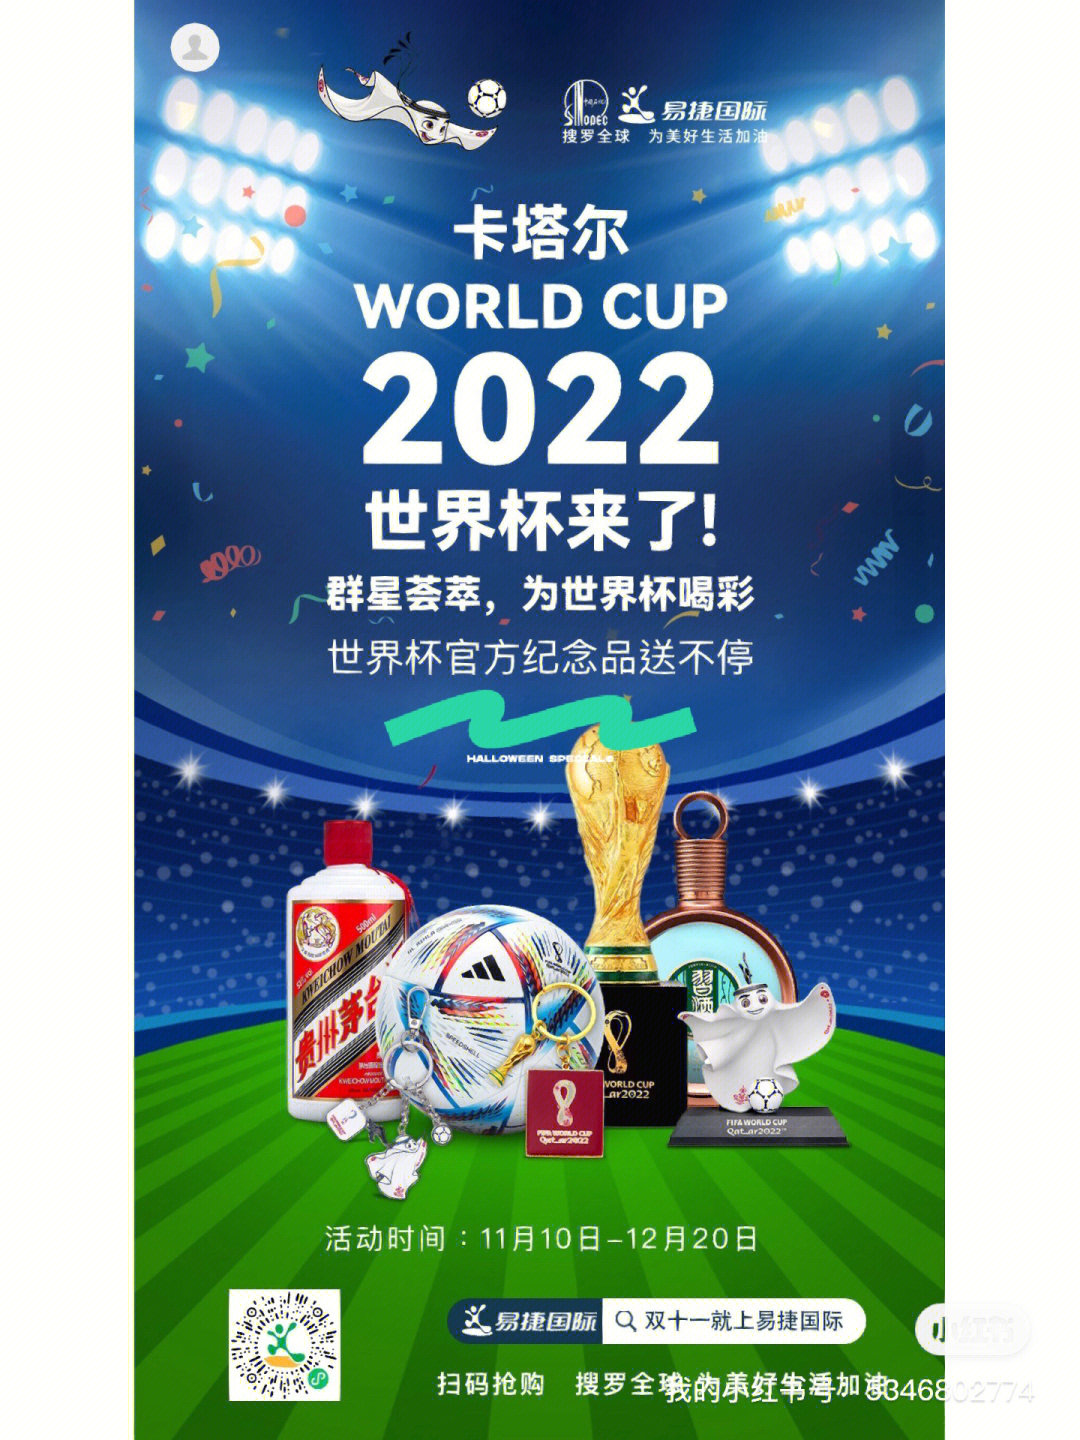 2022 年的世界杯马上就要开幕了,全世界的足球迷都在为这起四年一度的